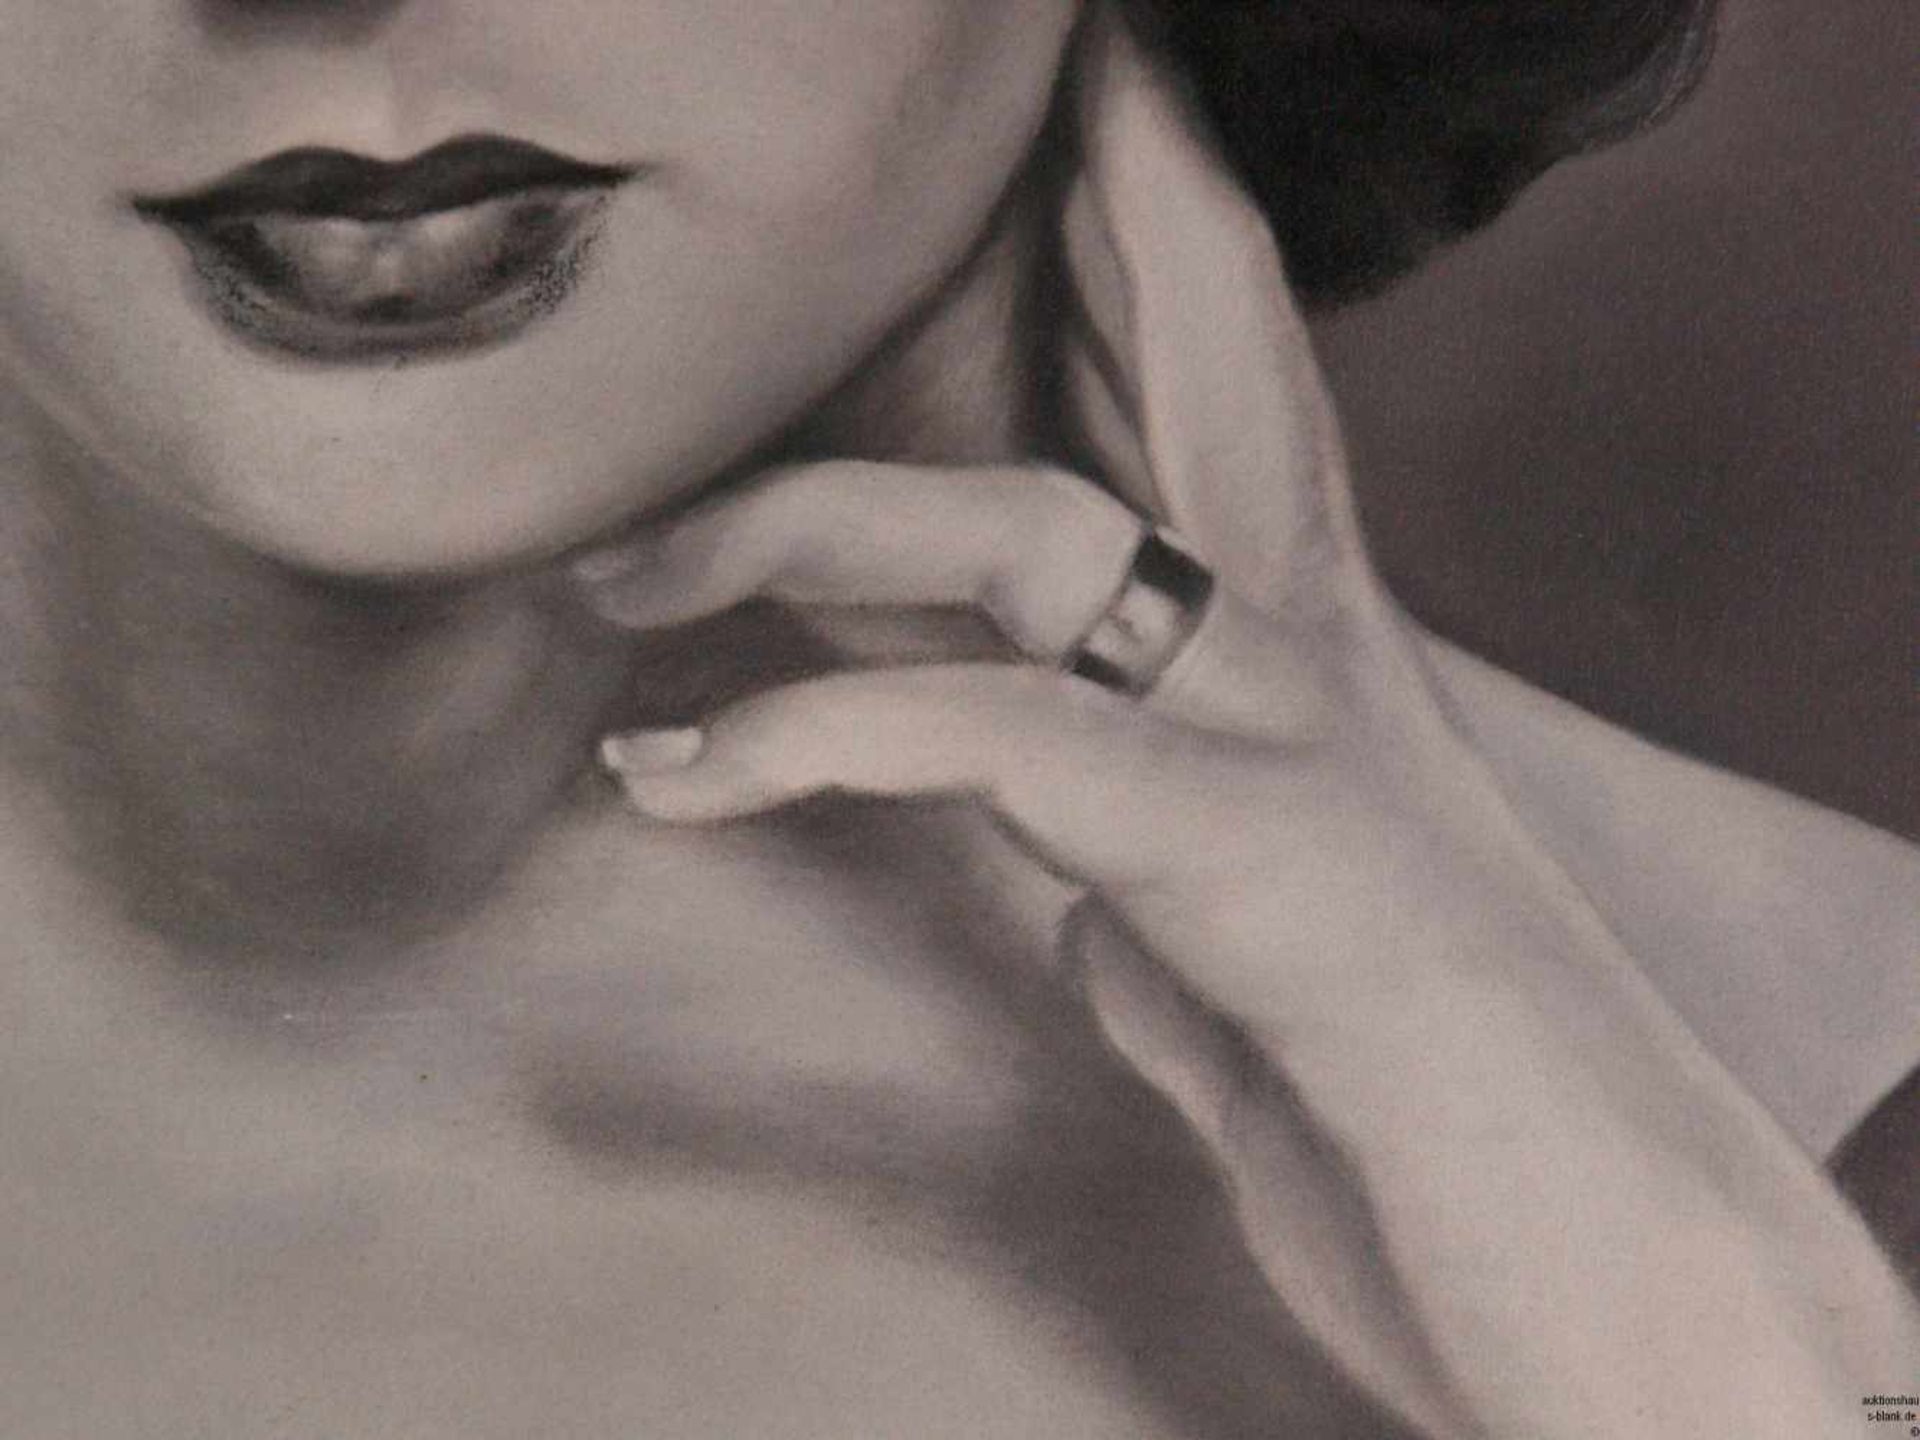 Unbekannt - "Liz Taylor", Öl auf Leinwand, schwarz/weißes Porträt der Schauspielerin Elizabeth - Bild 4 aus 7